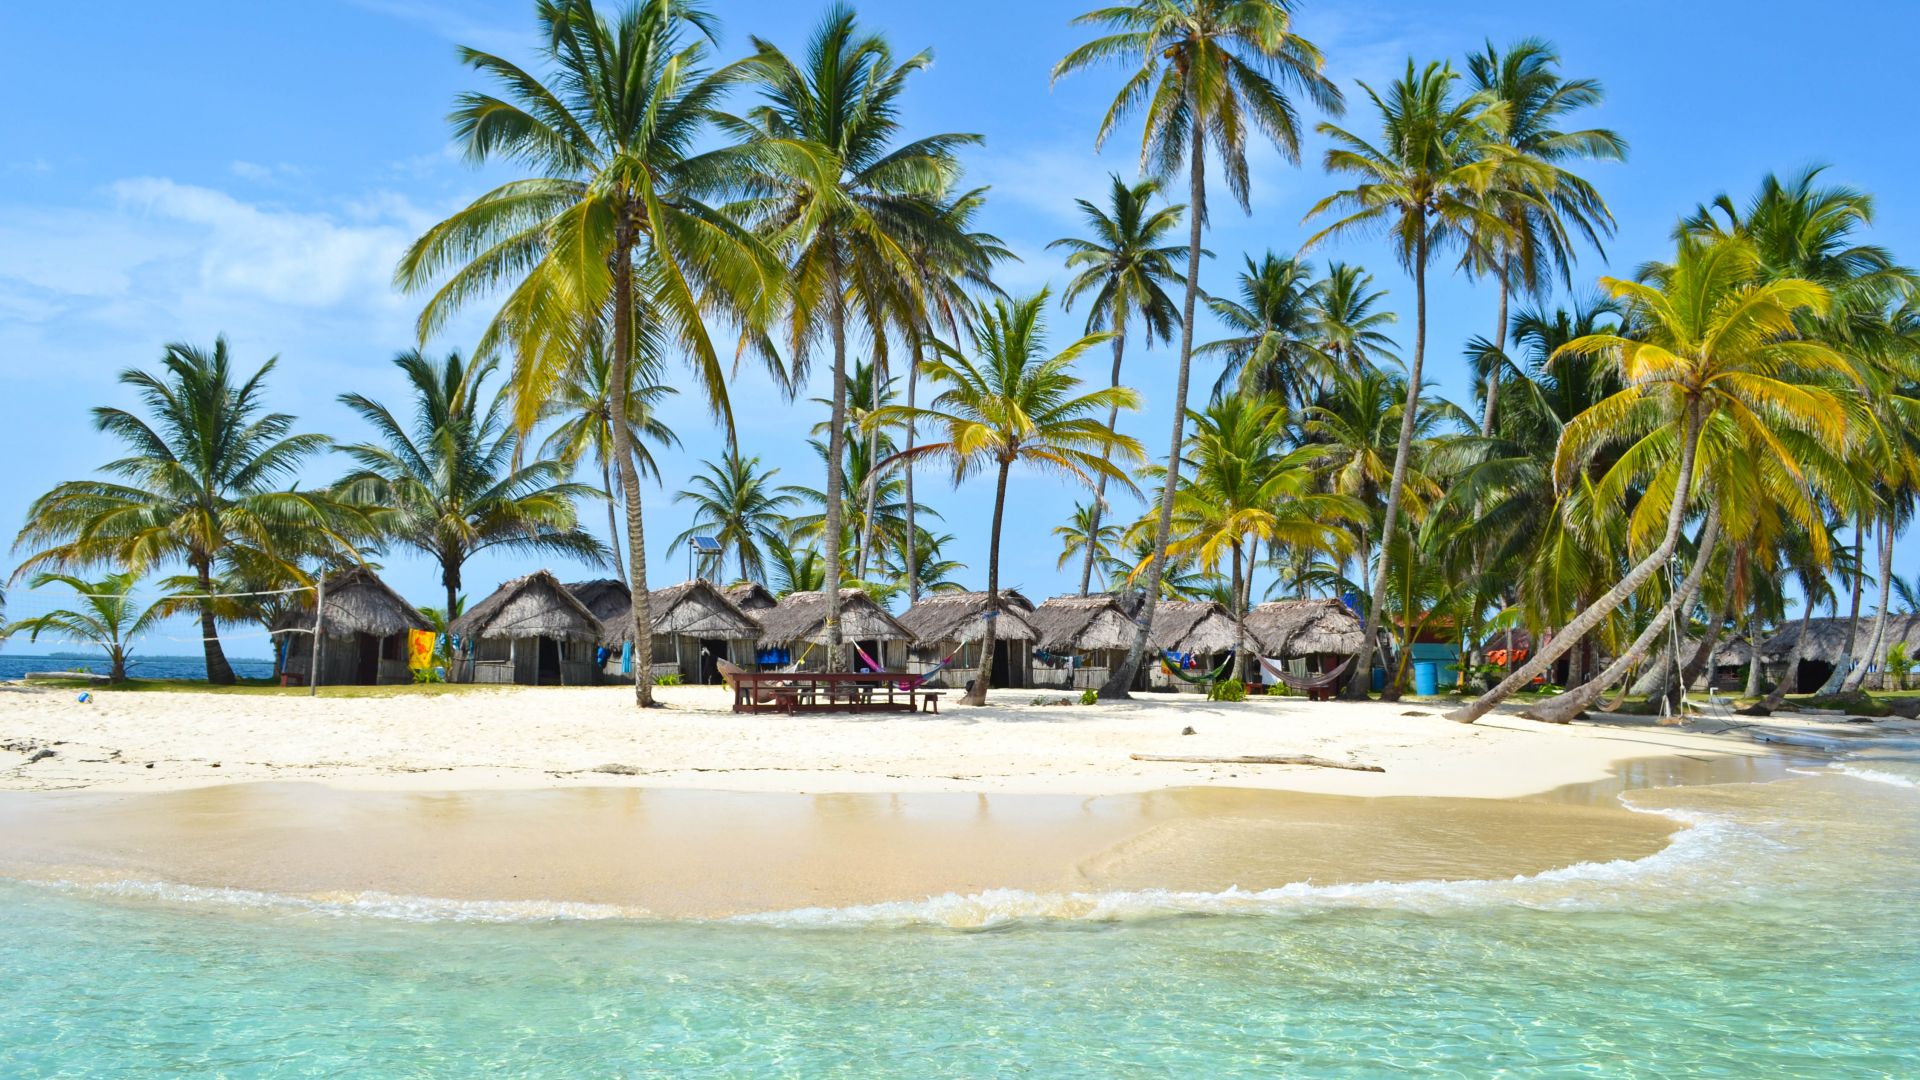 Мальдивские острова, 4k, 5k, Индийский океан, лучшие пляжи в мире, пальмы, берег, небо, Maldives, 4k, 5k wallpaper, Indian Ocean, Best Beaches in the World, palms, shore, sky (horizontal)